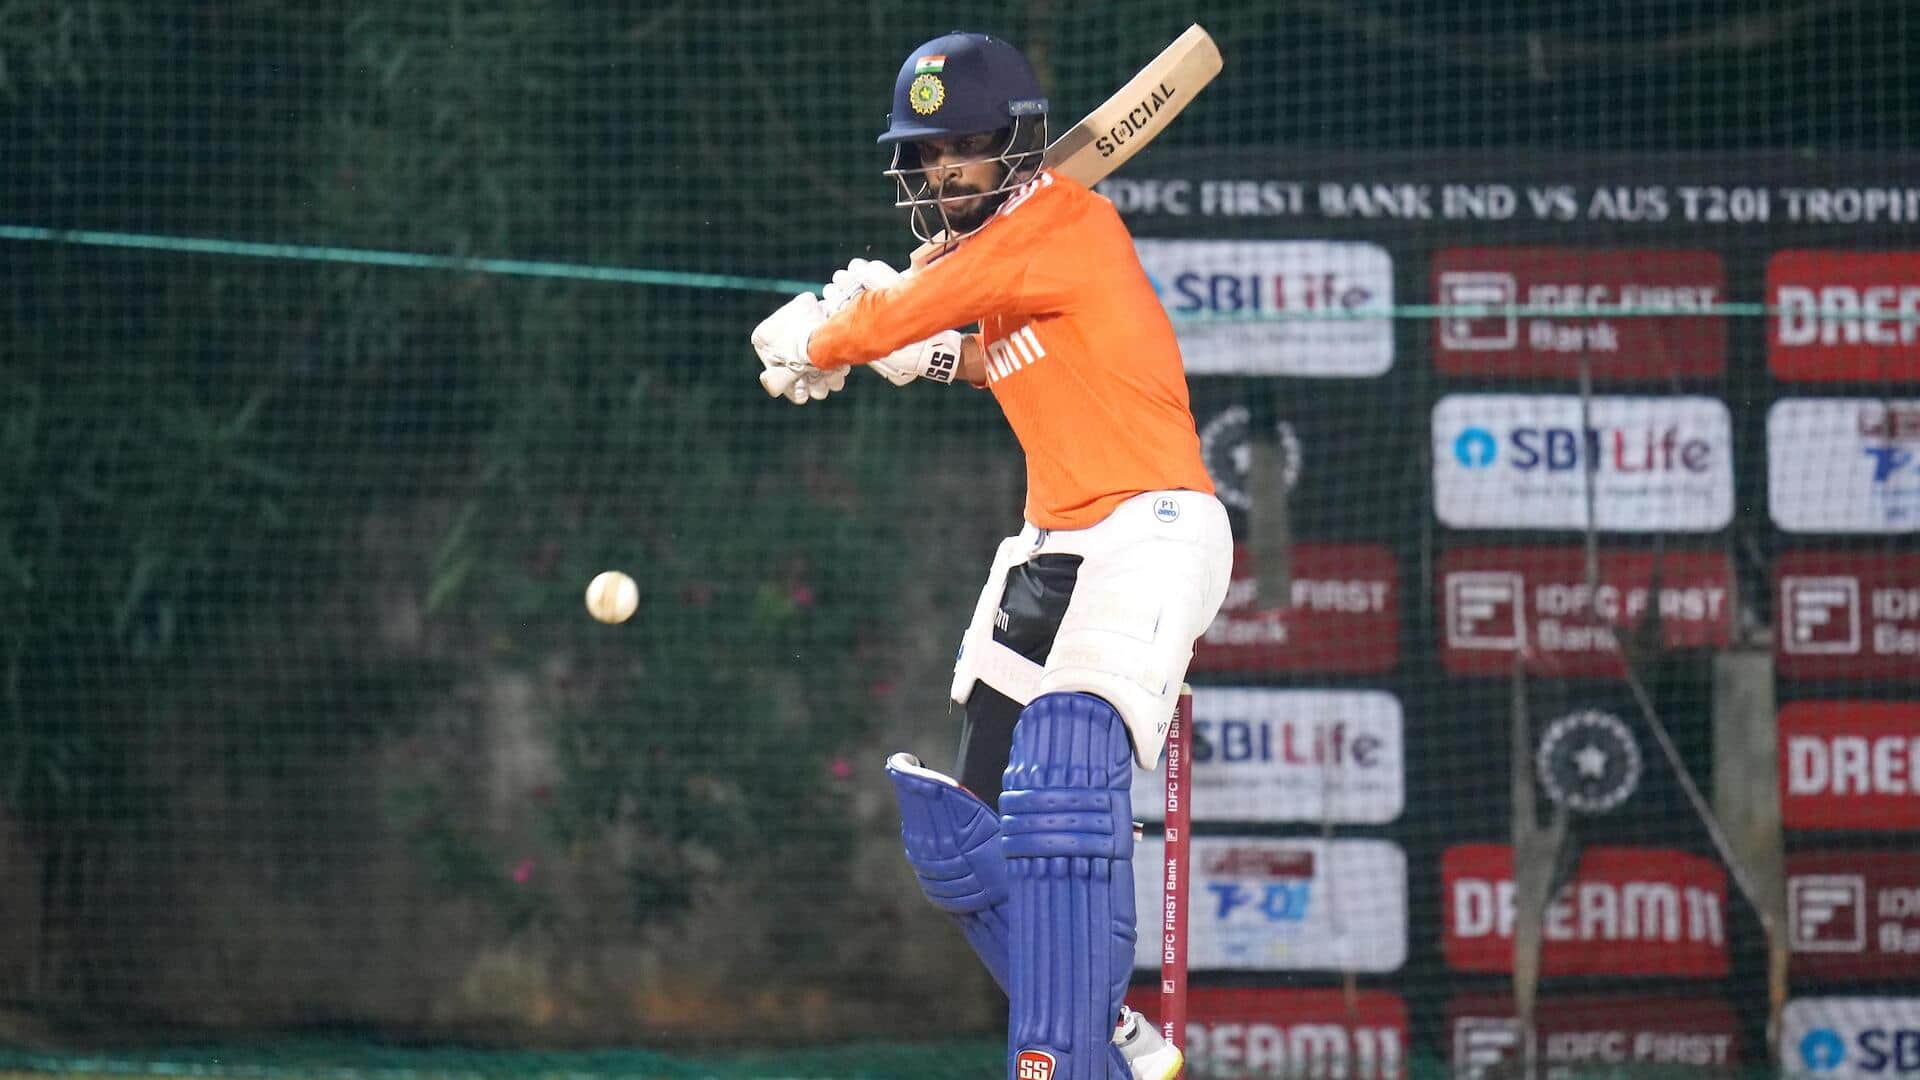 रुतुराज गायकवाड़ टी-20 अंतरराष्ट्रीय में डायमंड डक का शिकार होने वाले तीसरे भारतीय बने